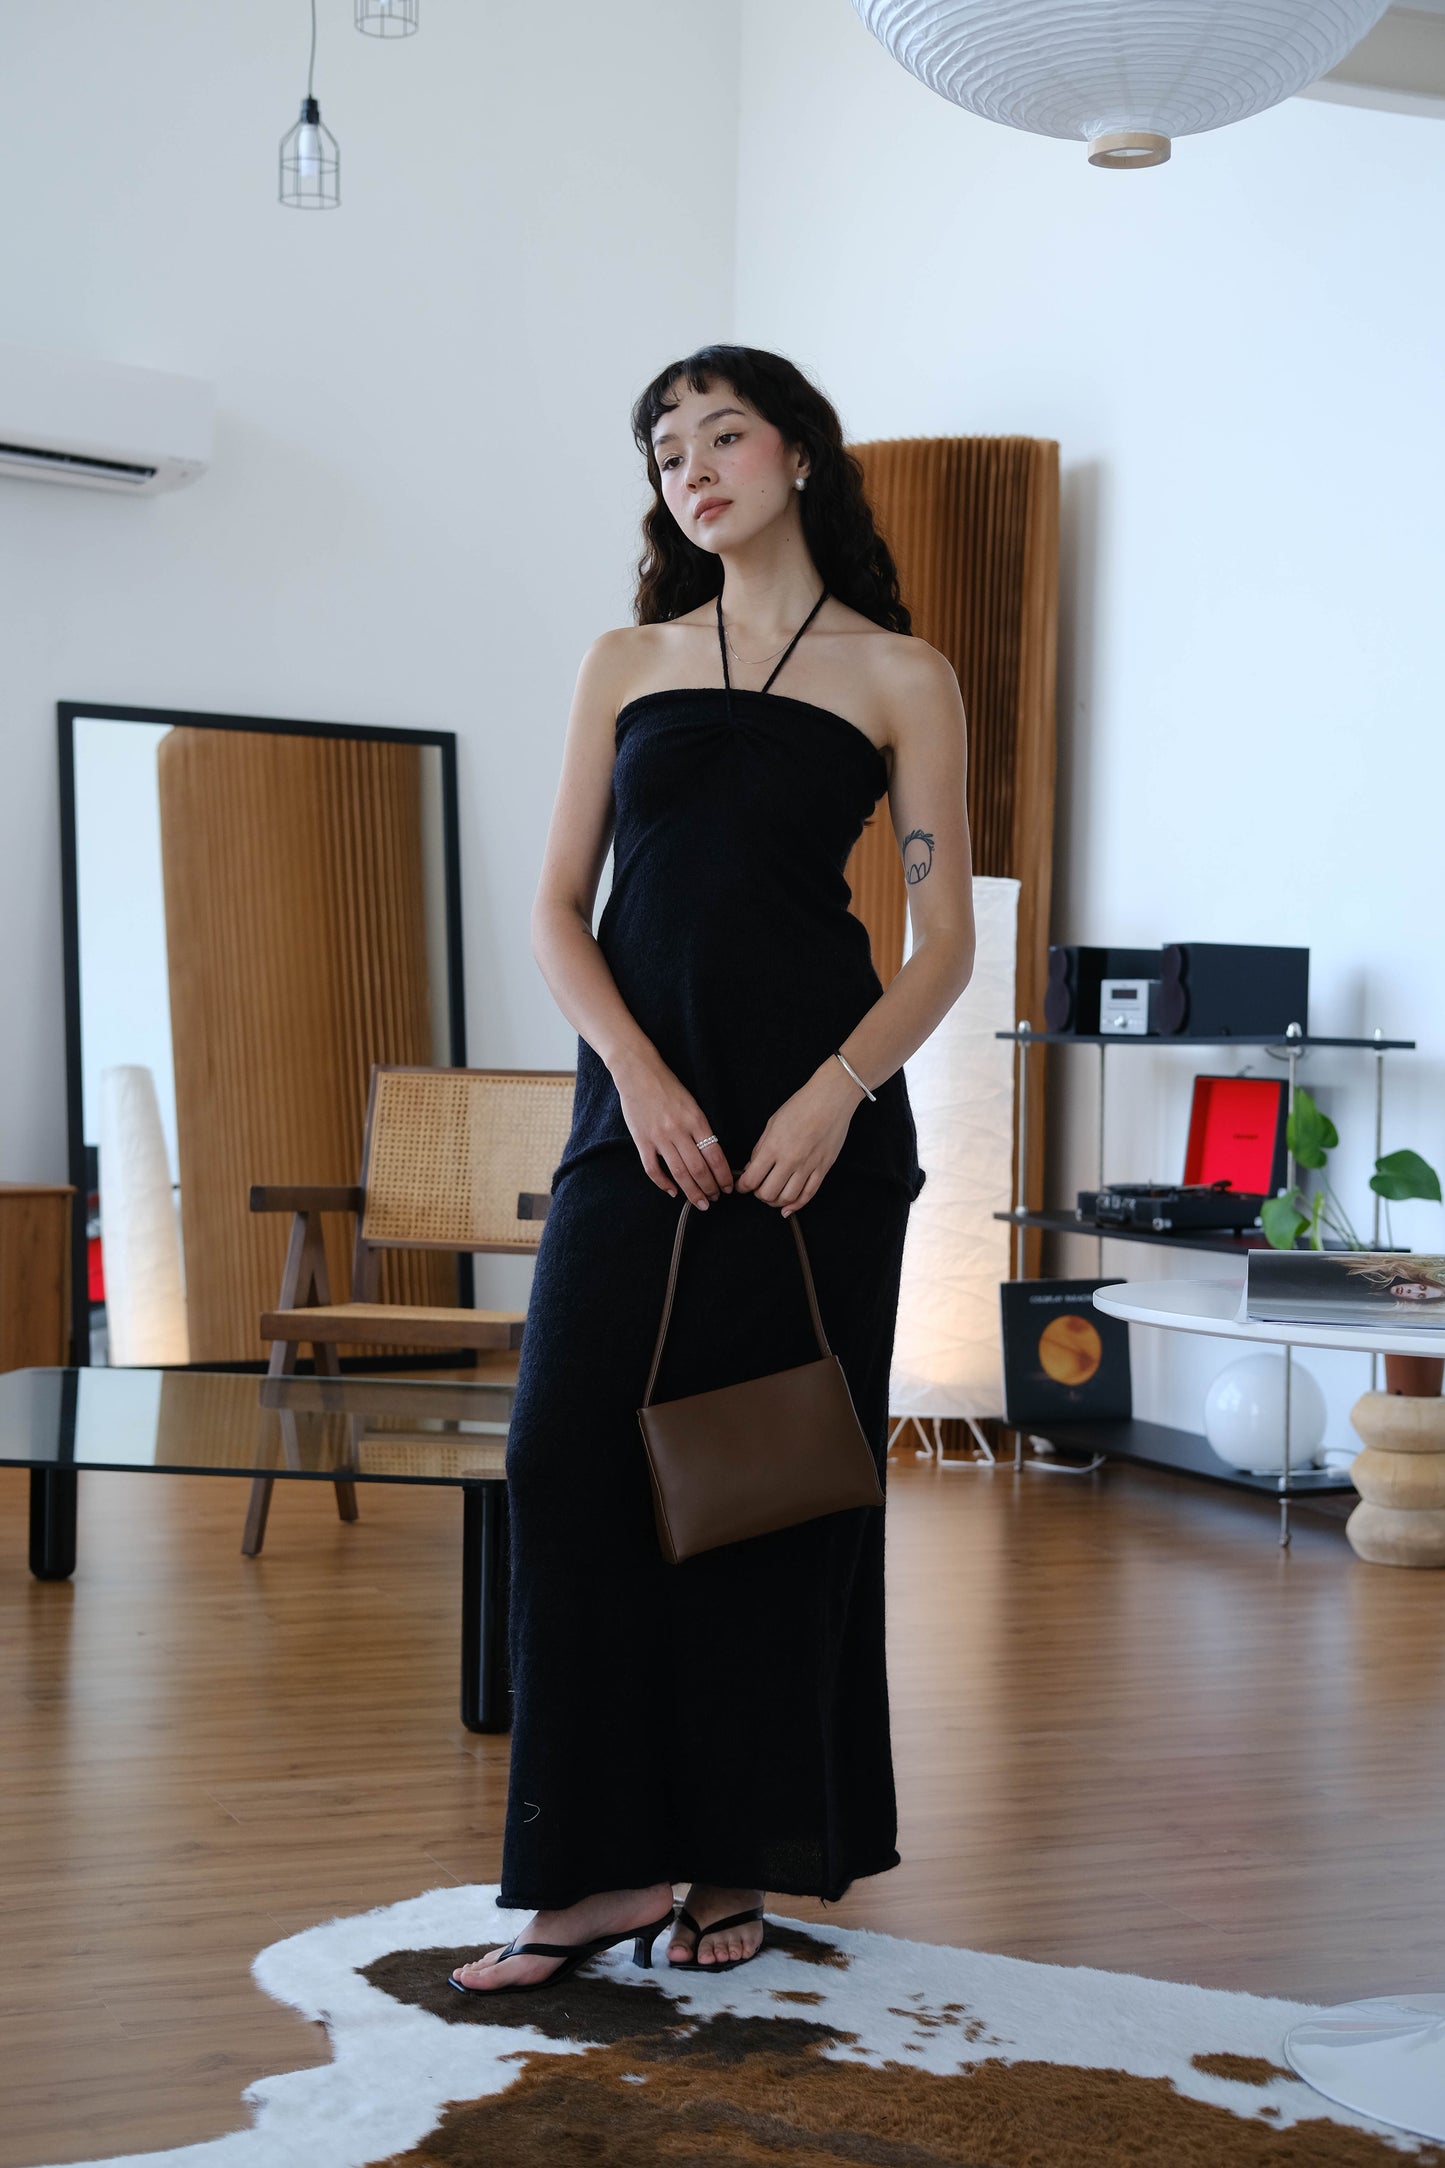 Woolen bandeau halter top in classic black